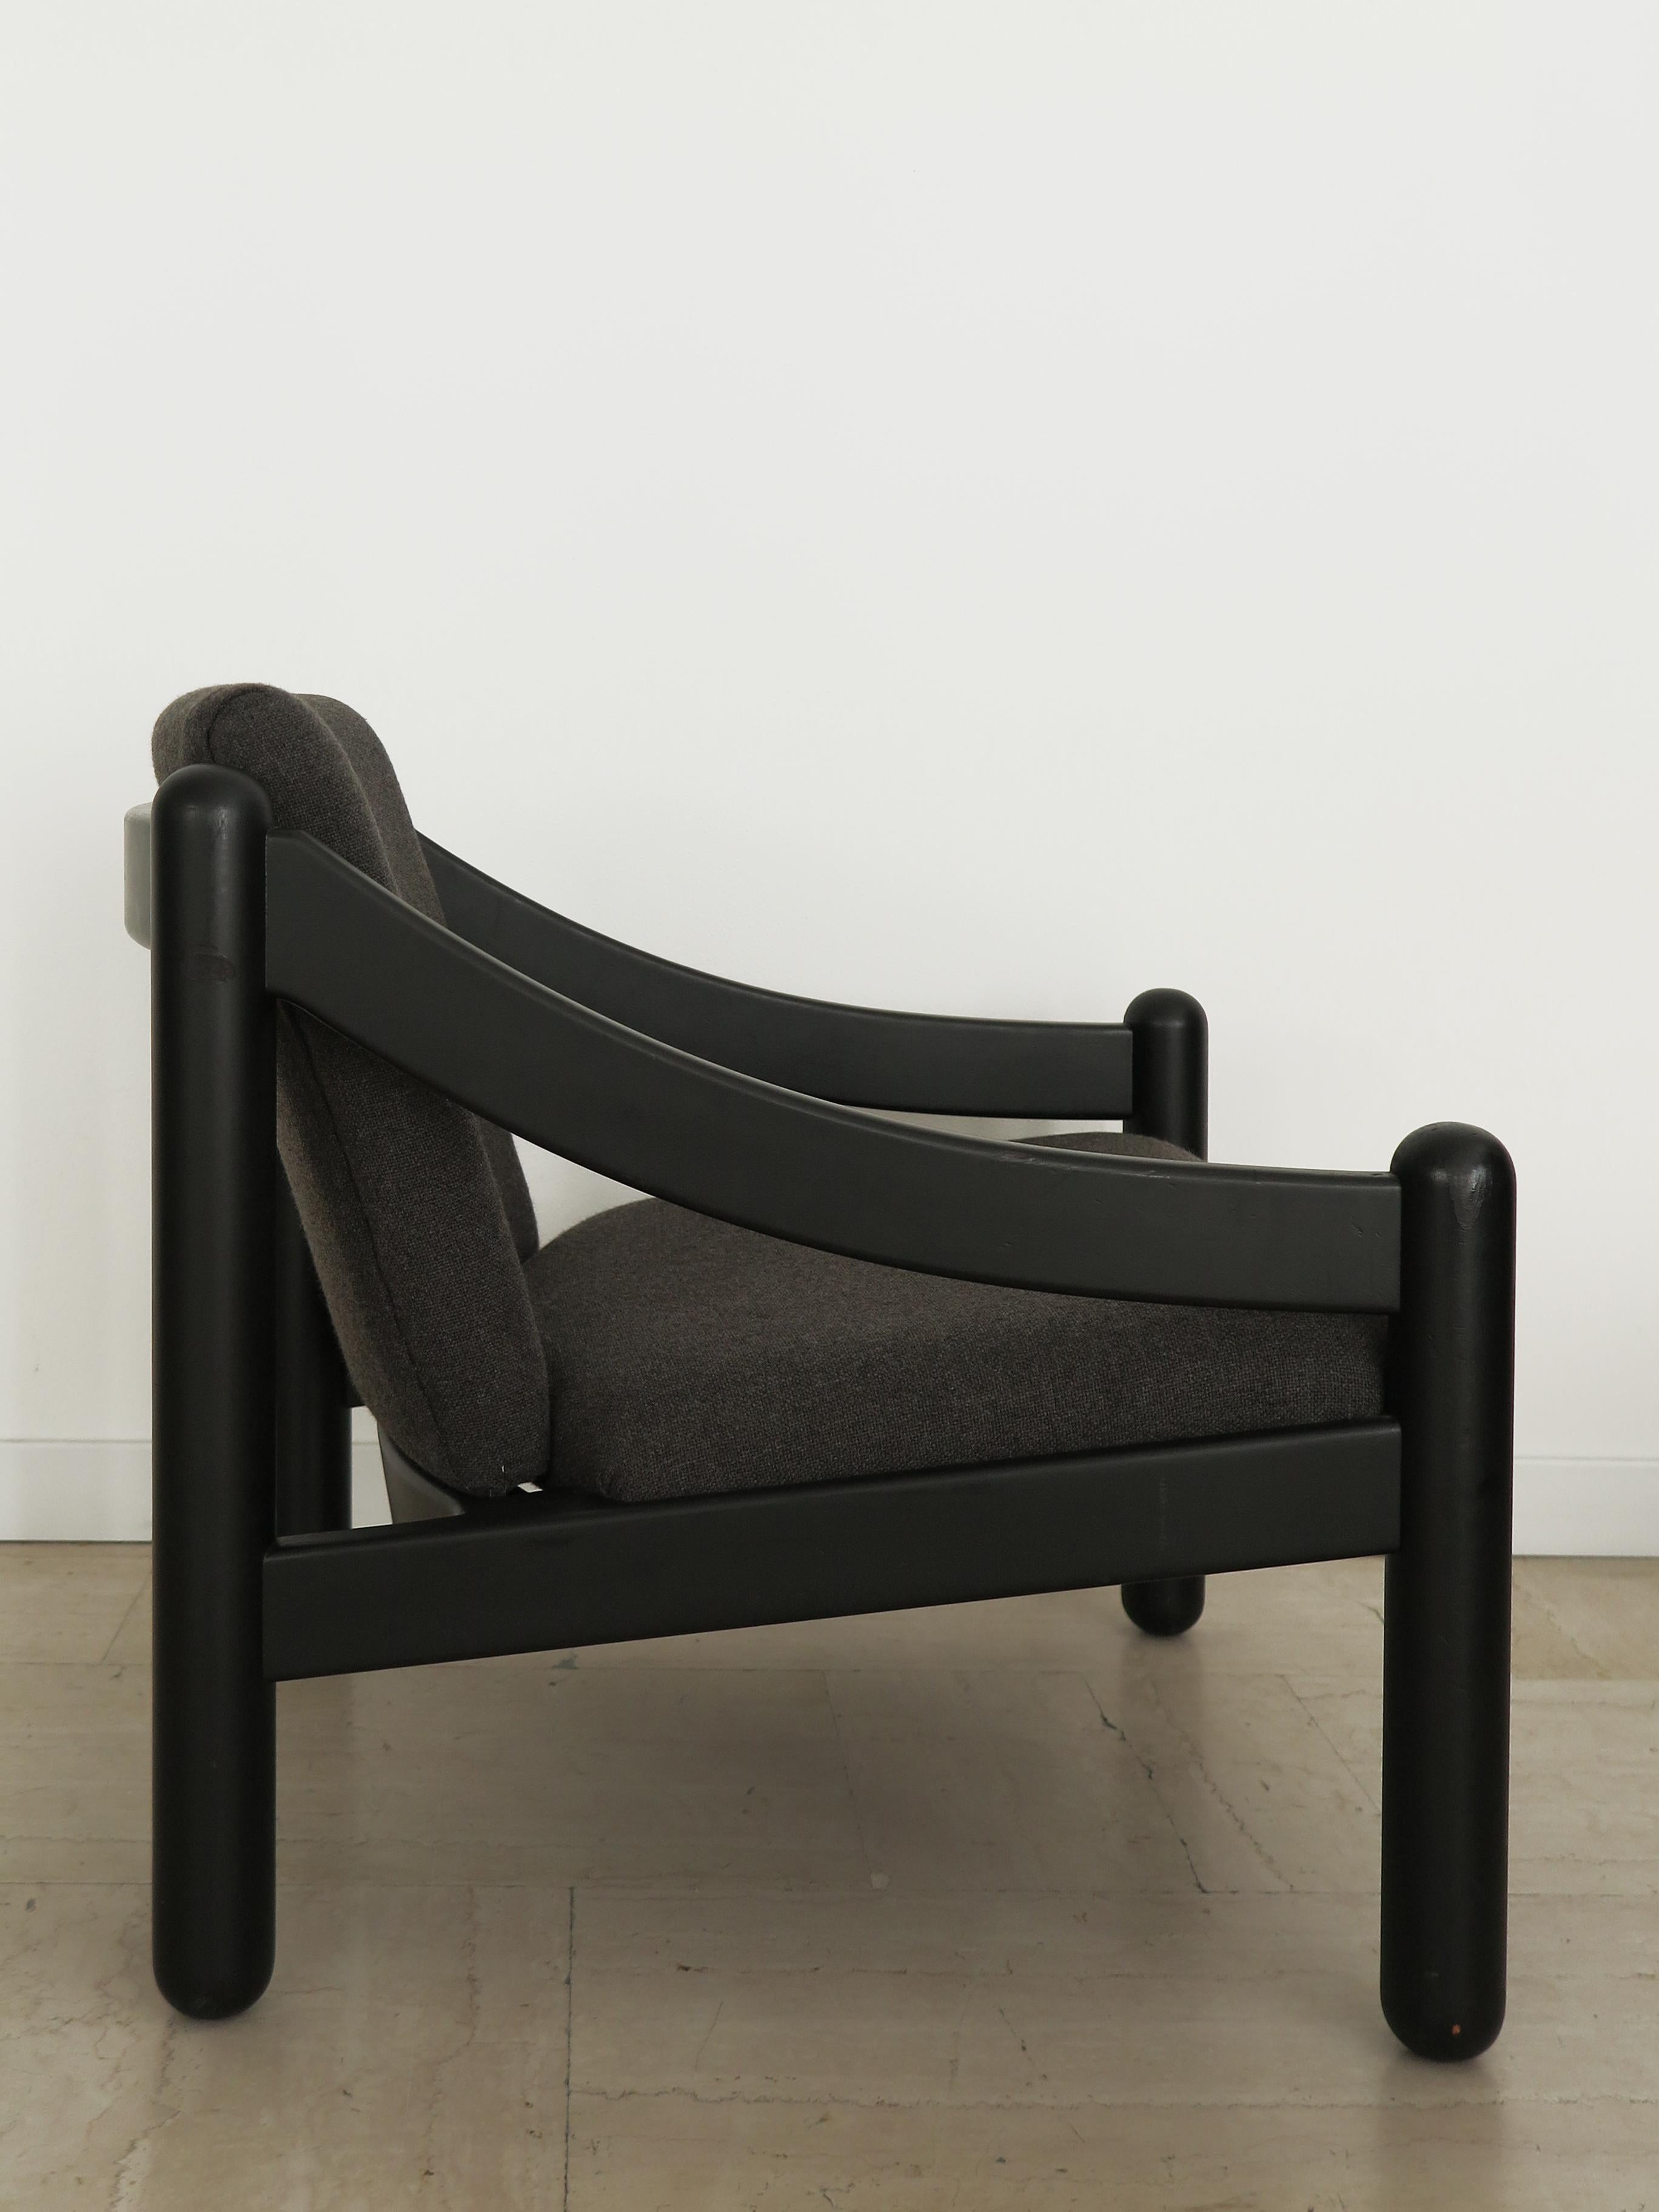 Italienischer Sessel Modell '930 Carimate' entworfen von Vico Magistretti und hergestellt von Cassina mit lackiertem Holzrahmen und Stoffkissen, Cassina Klebeetikett unter dem Rahmen, Italien 1960er Jahre.

Beachten Sie, dass der Sessel original aus